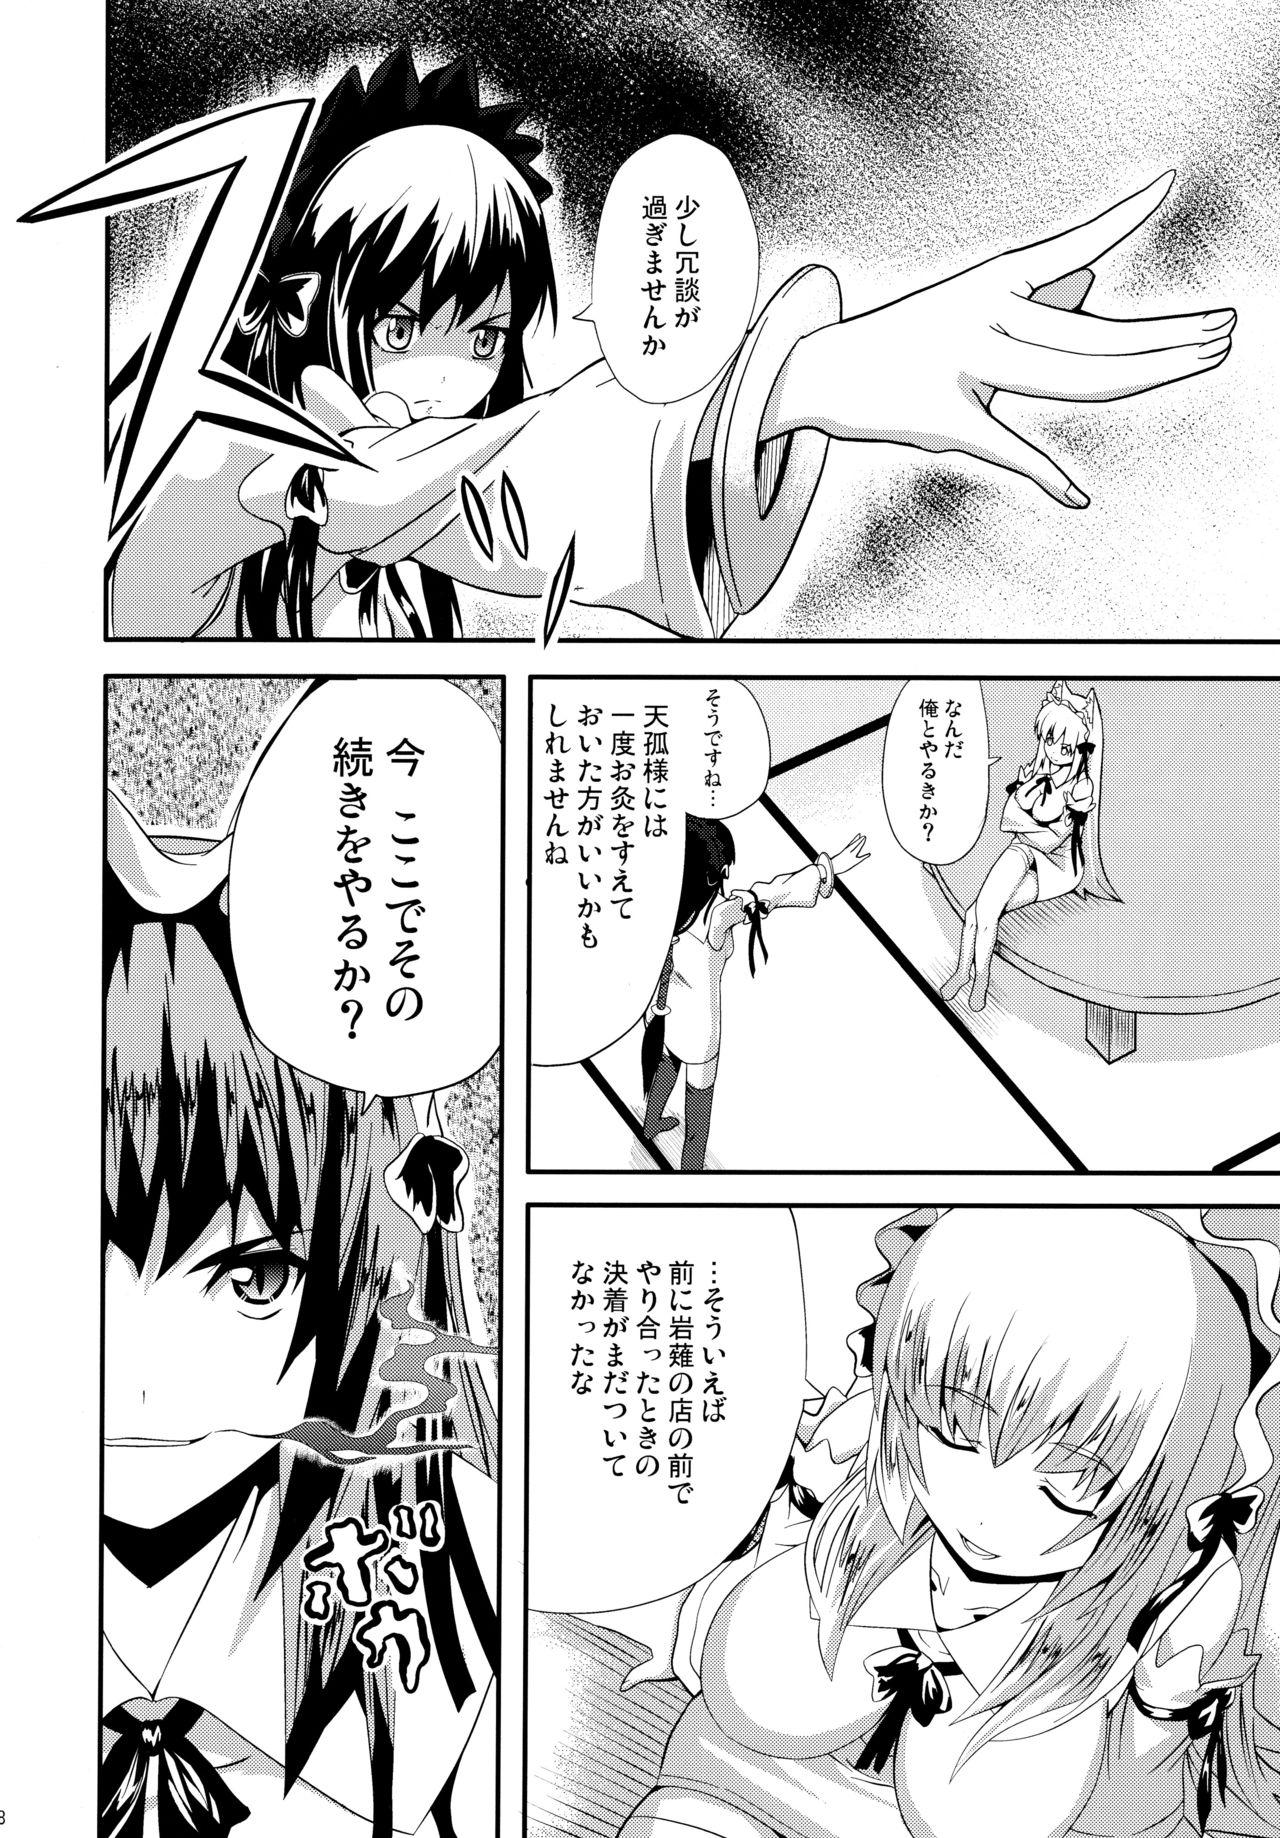 Milfporn Hare, Tokidoki Oinari-sama 4 - Wagaya no oinari-sama Village - Page 8